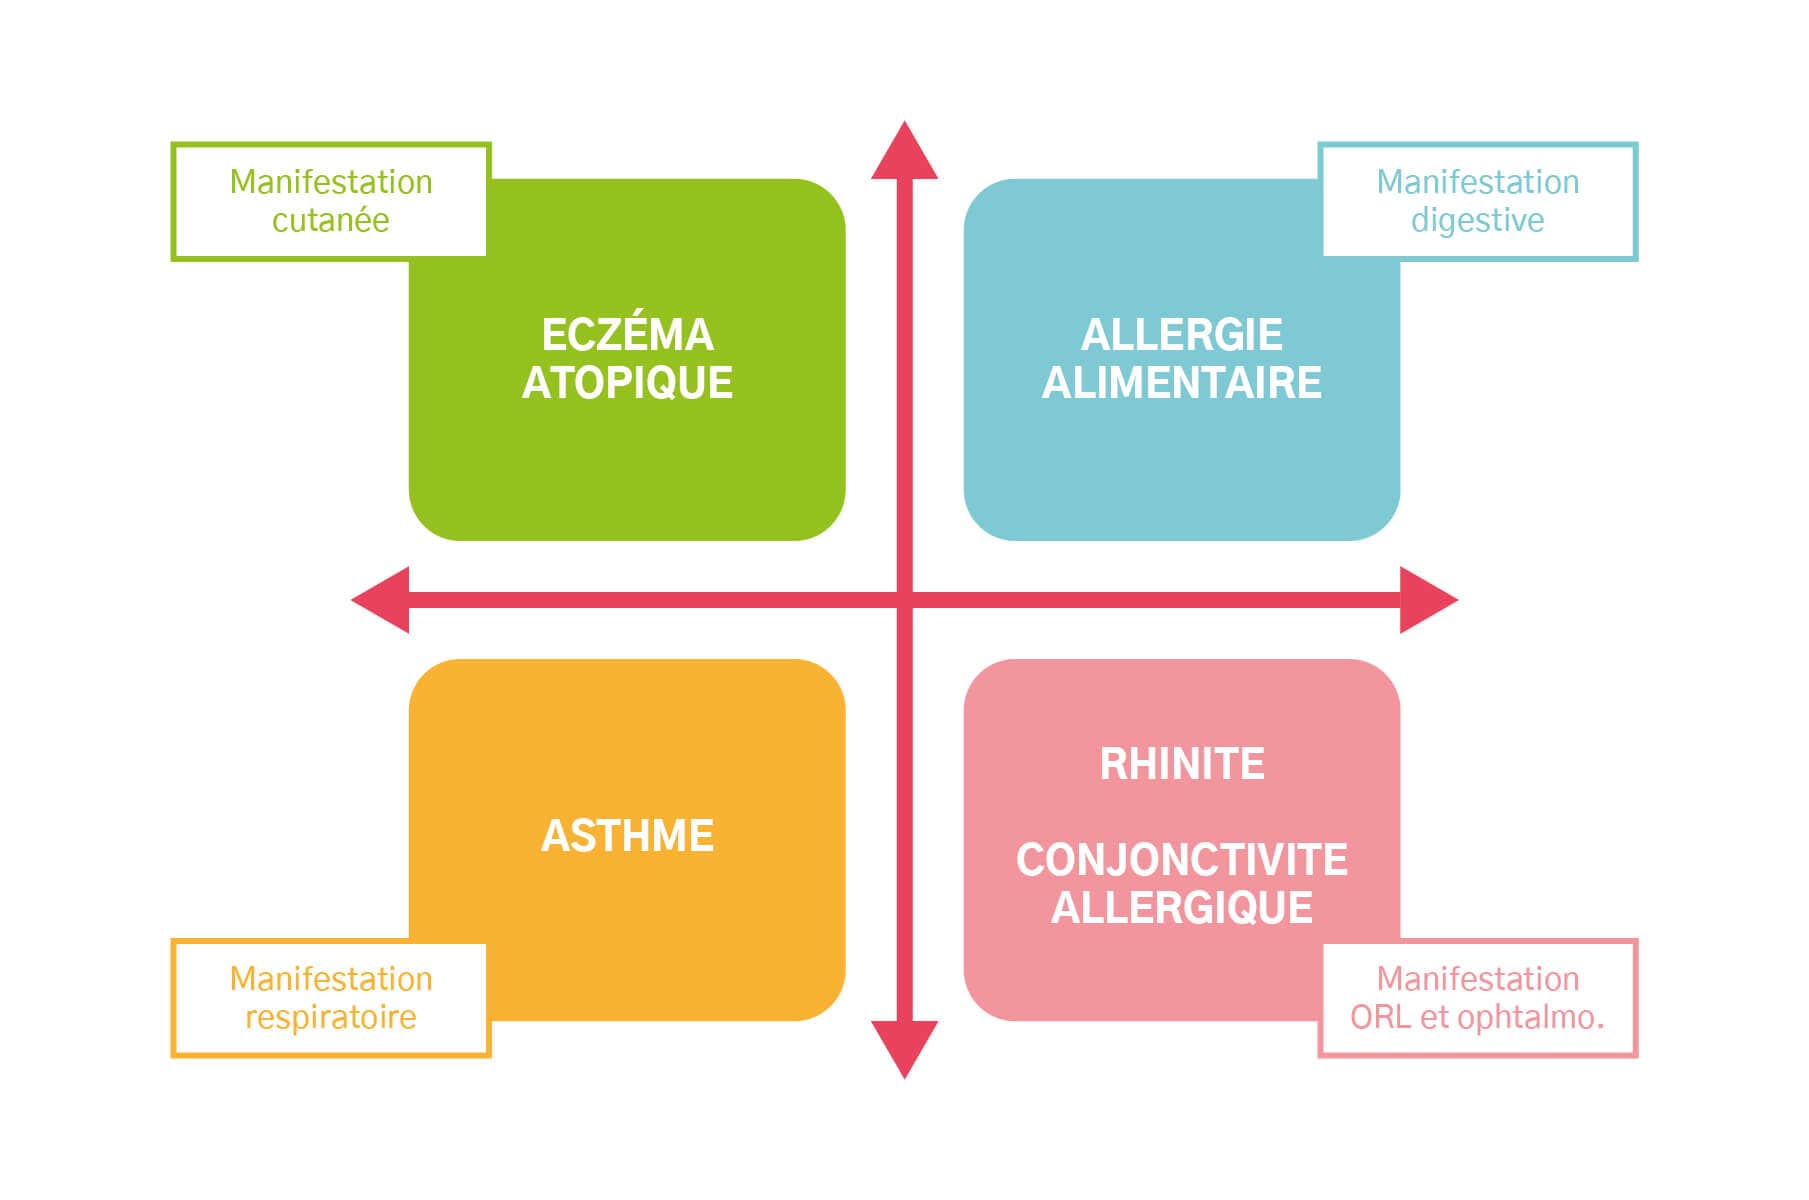 Les différentes manifestations de l'atopie : eczéma atopique/asthme/allergie alimentaire/rhinite - conjonctivite allergique